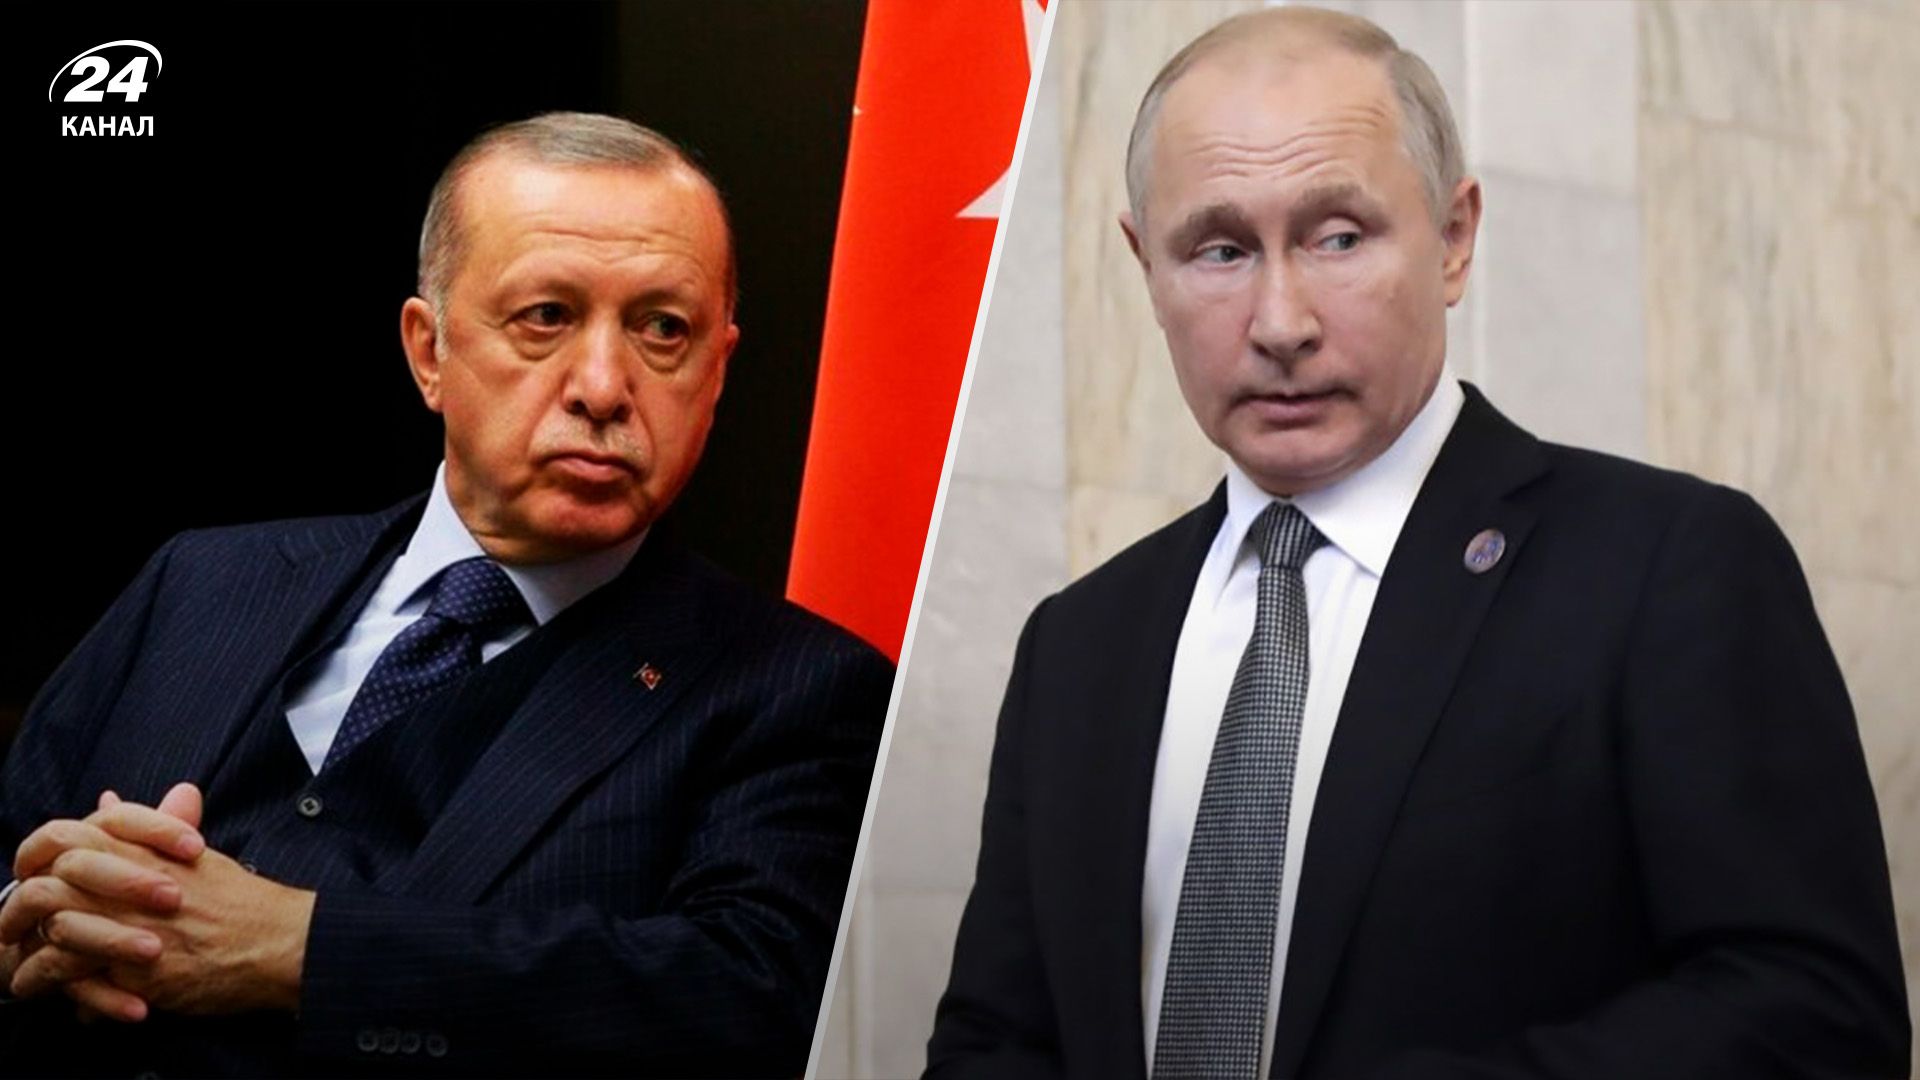 Таємна угода Ердогана й Путіна - чи могла вона спровокувати конфлікт - 24 Канал